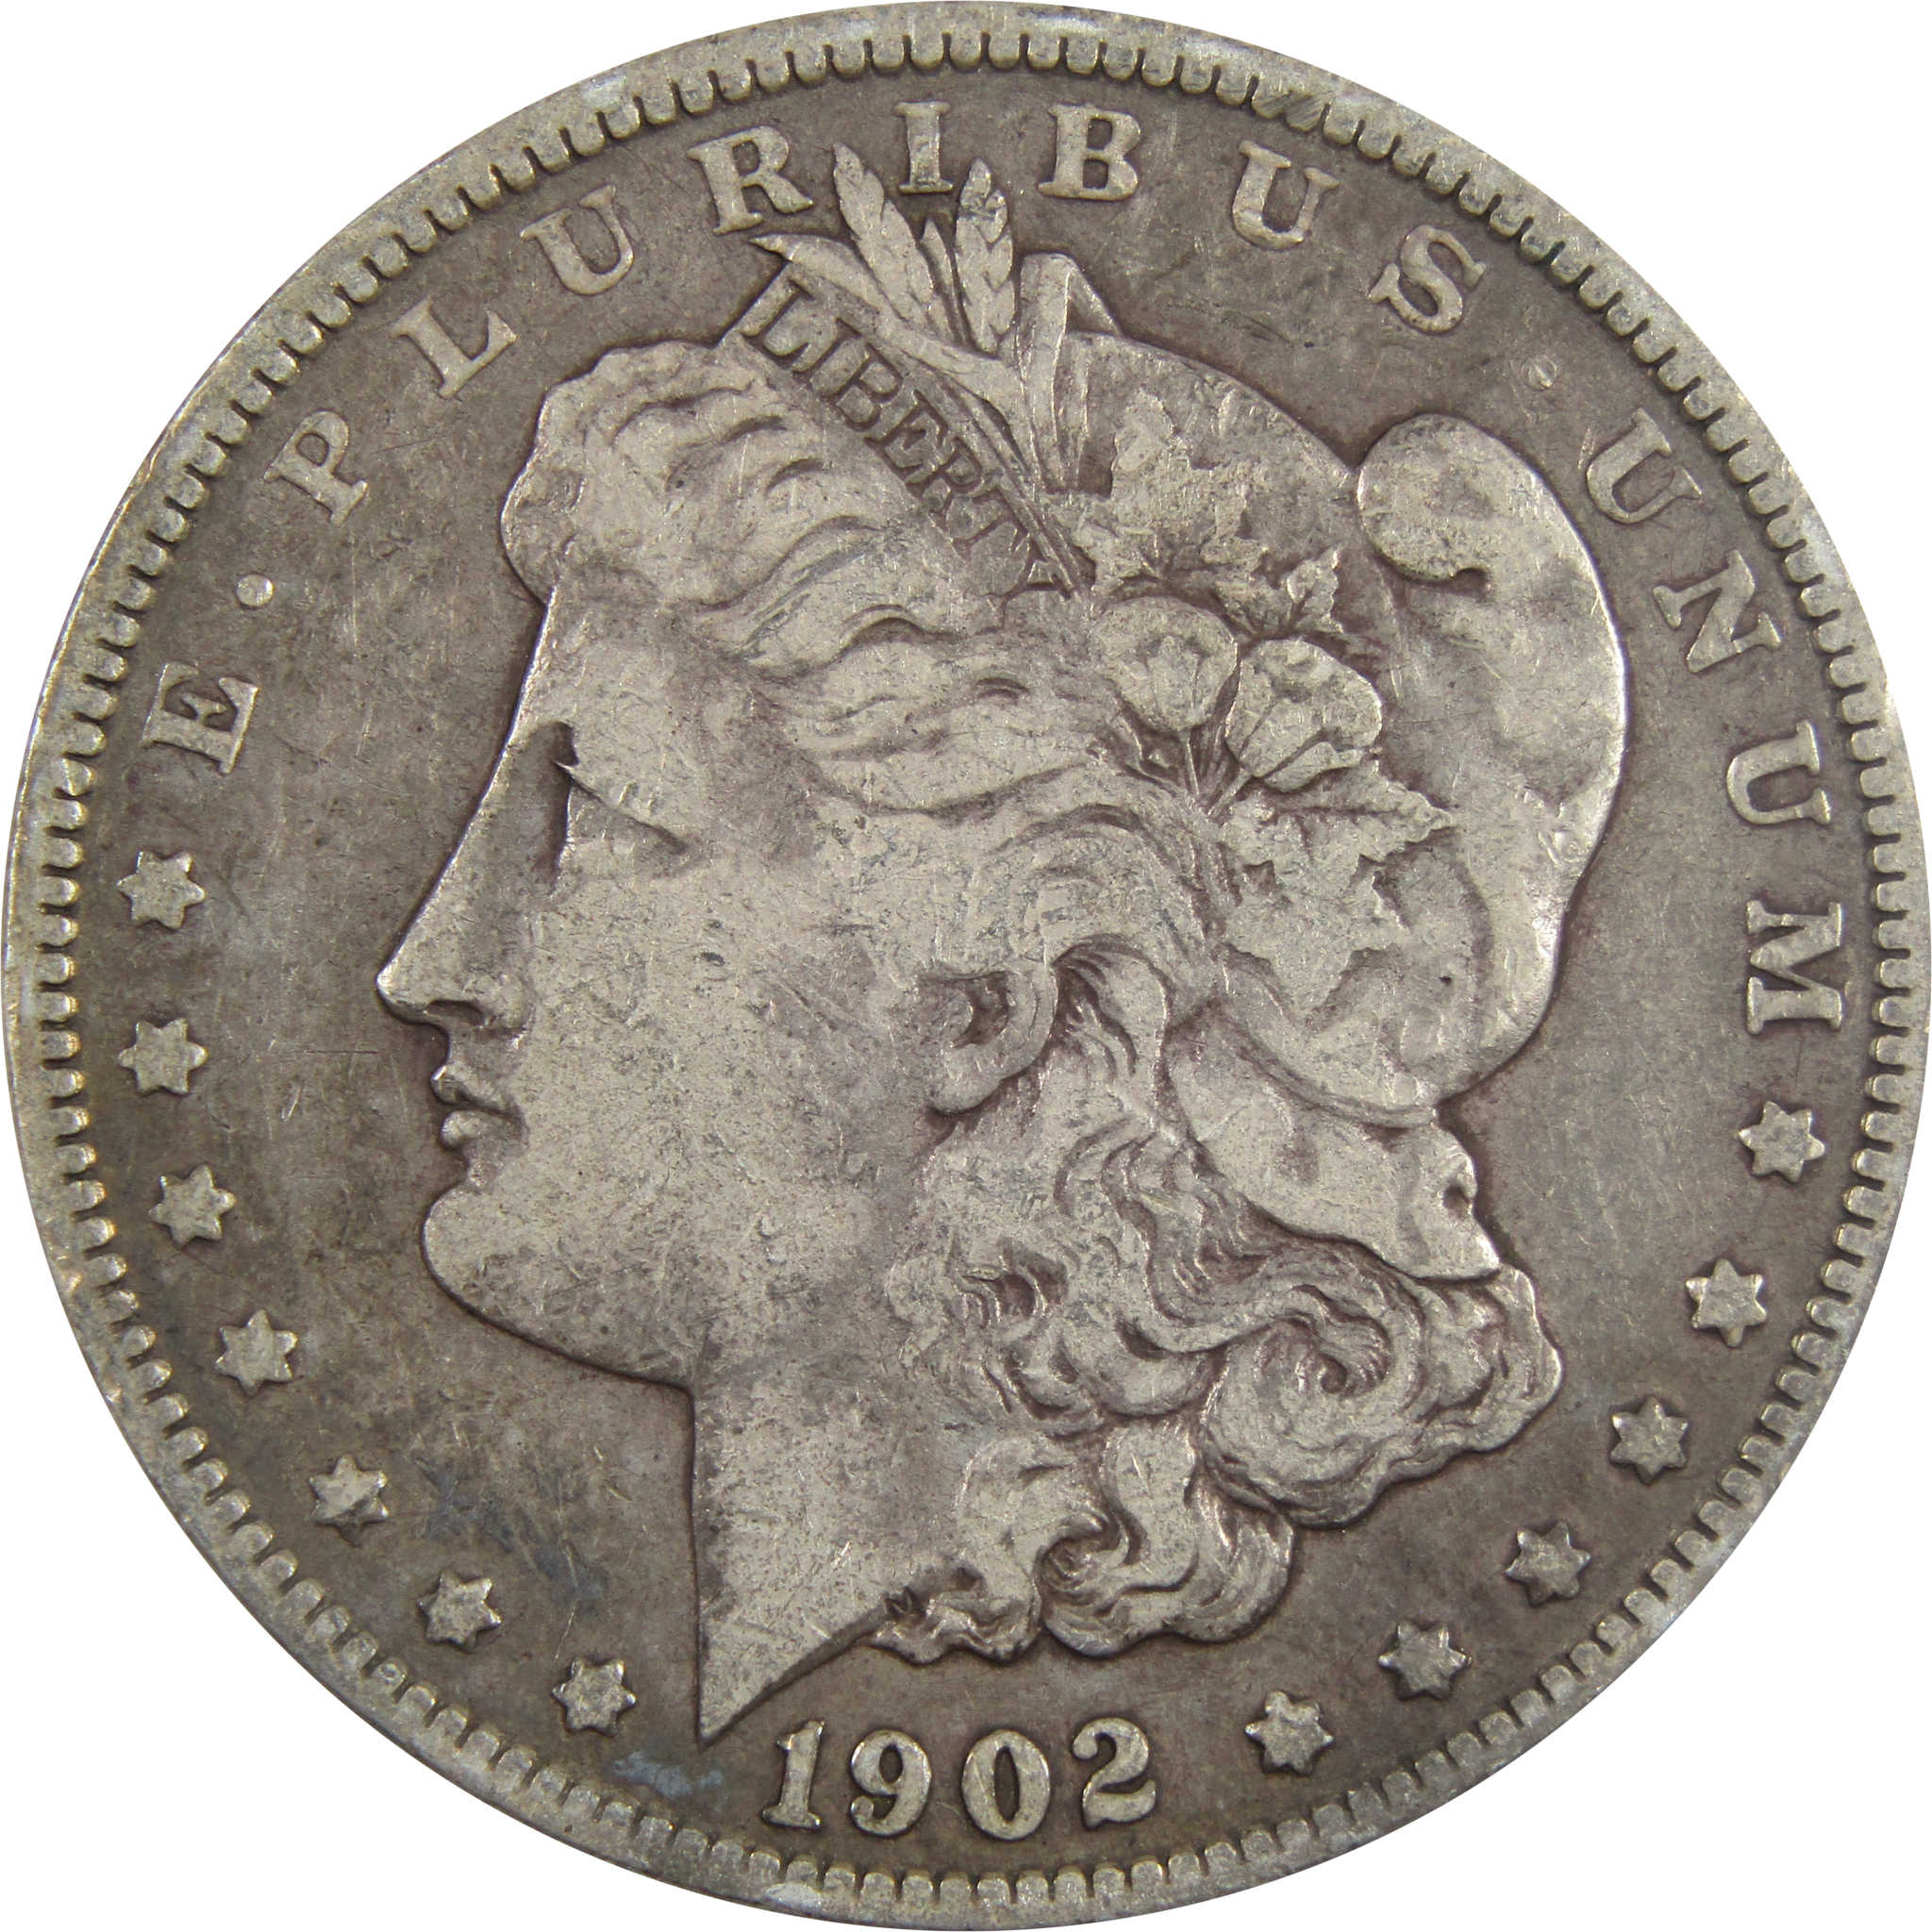 1902 Morgan Dollar F Fine 90% Silver $1 Coin SKU:I5570 - Morgan coin - Morgan silver dollar - Morgan silver dollar for sale - Profile Coins &amp; Collectibles